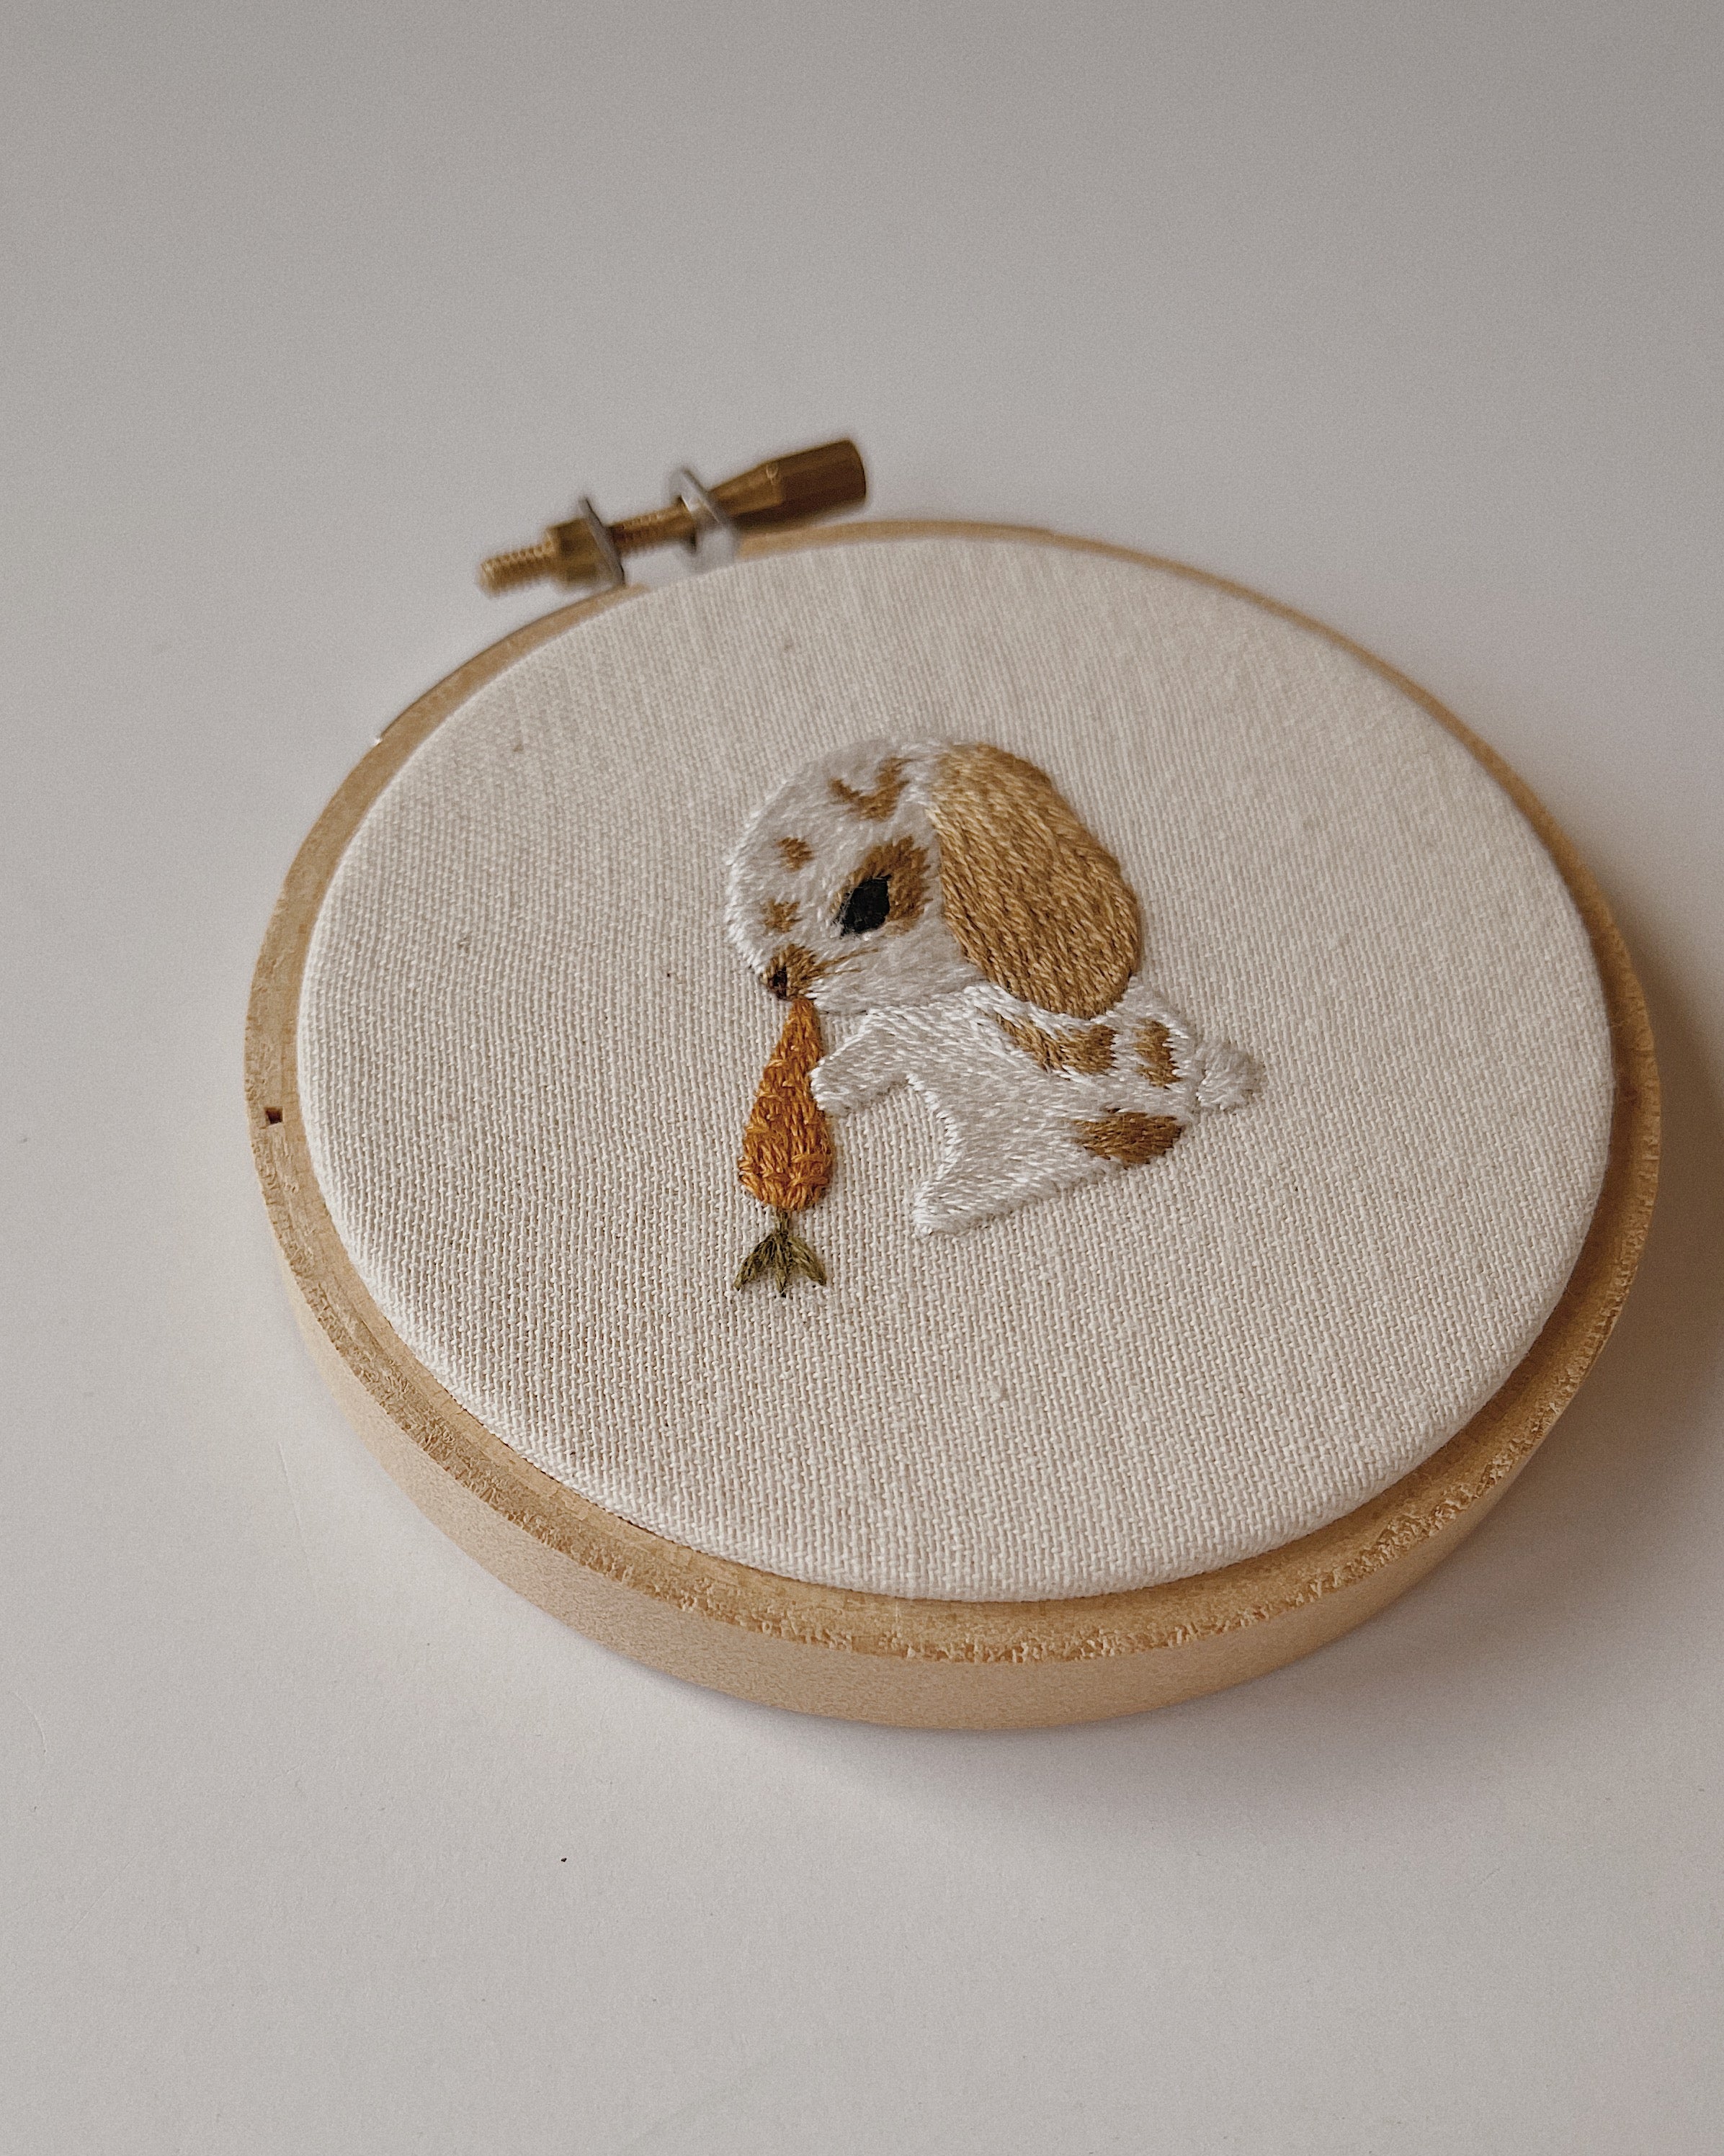 Bunny Embroidery Hoop